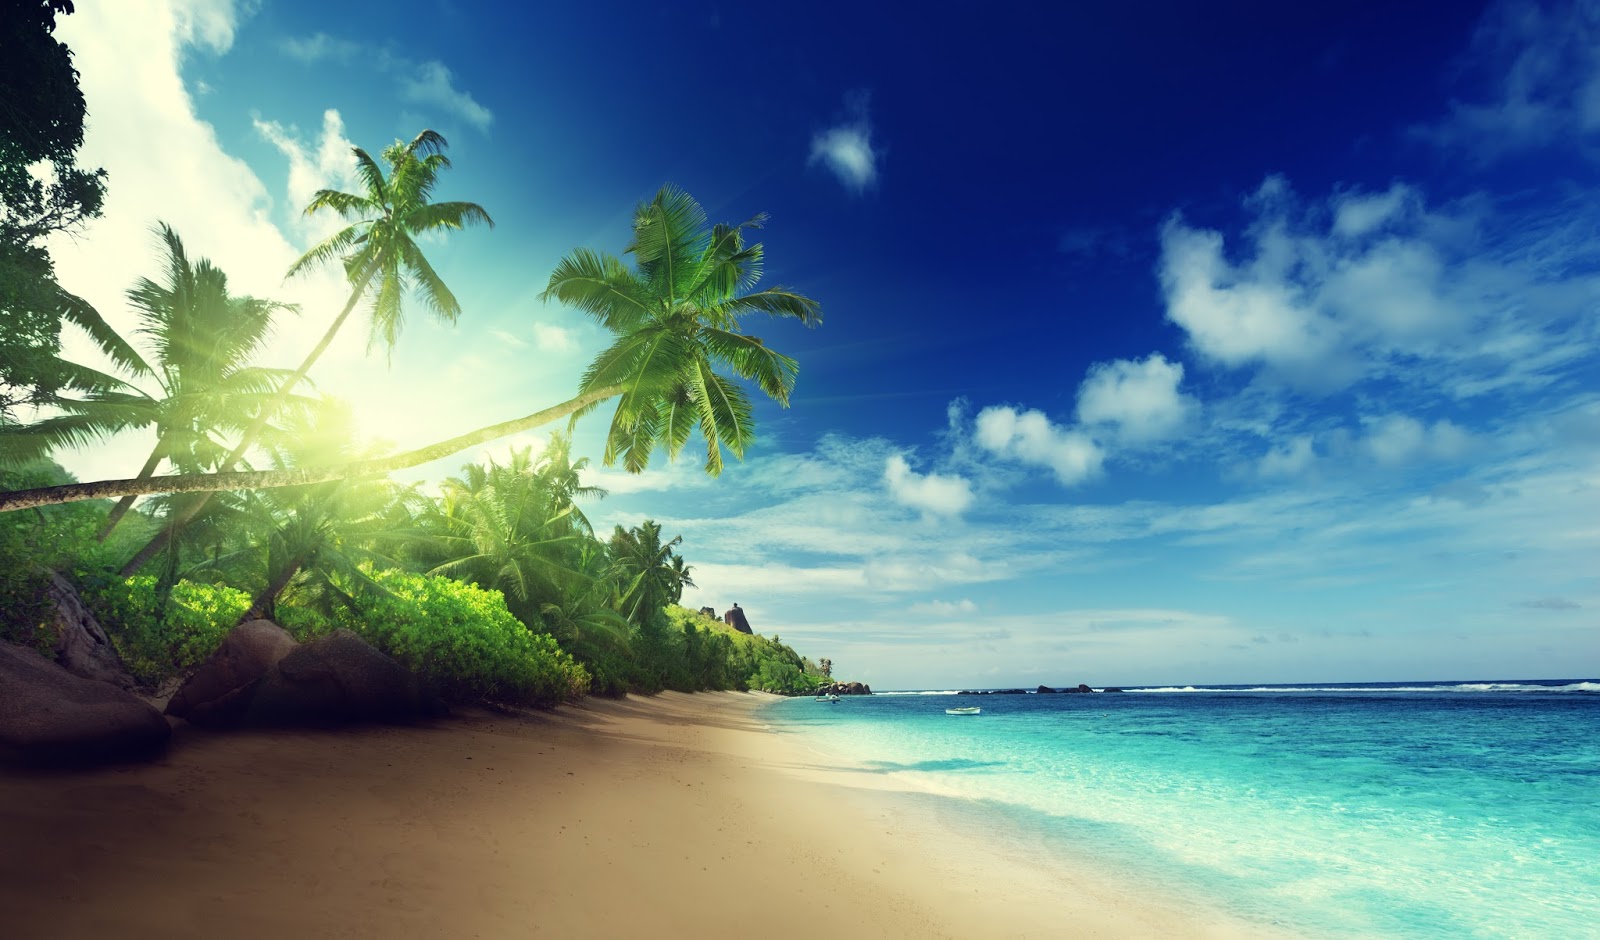 Banco de Imágenes Gratis: 30 fotos de playas tropicales con agua